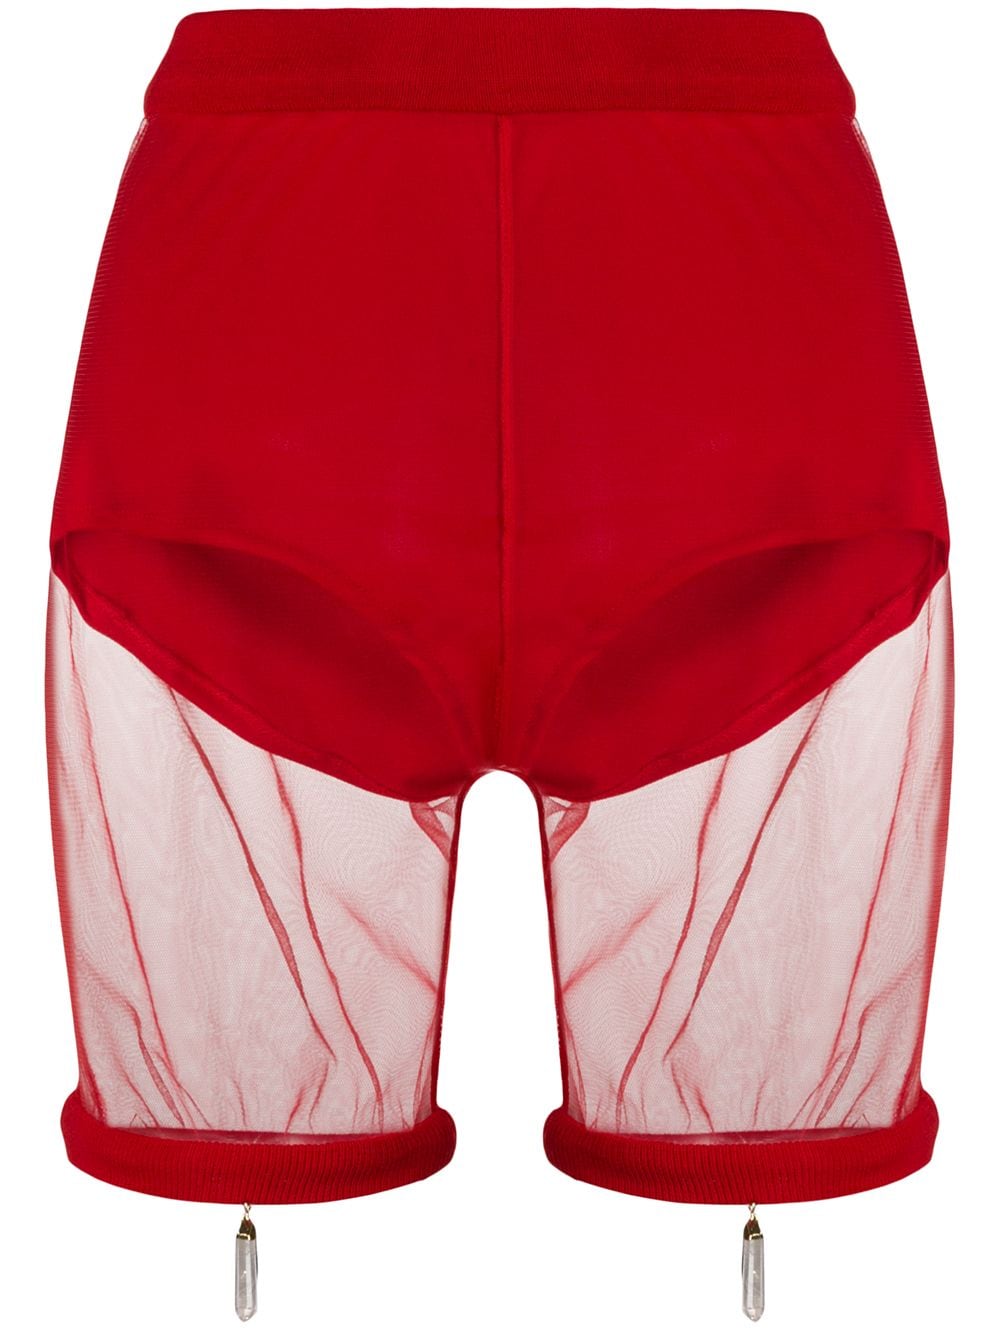 фото Atu body couture прозрачные облегающие шорты